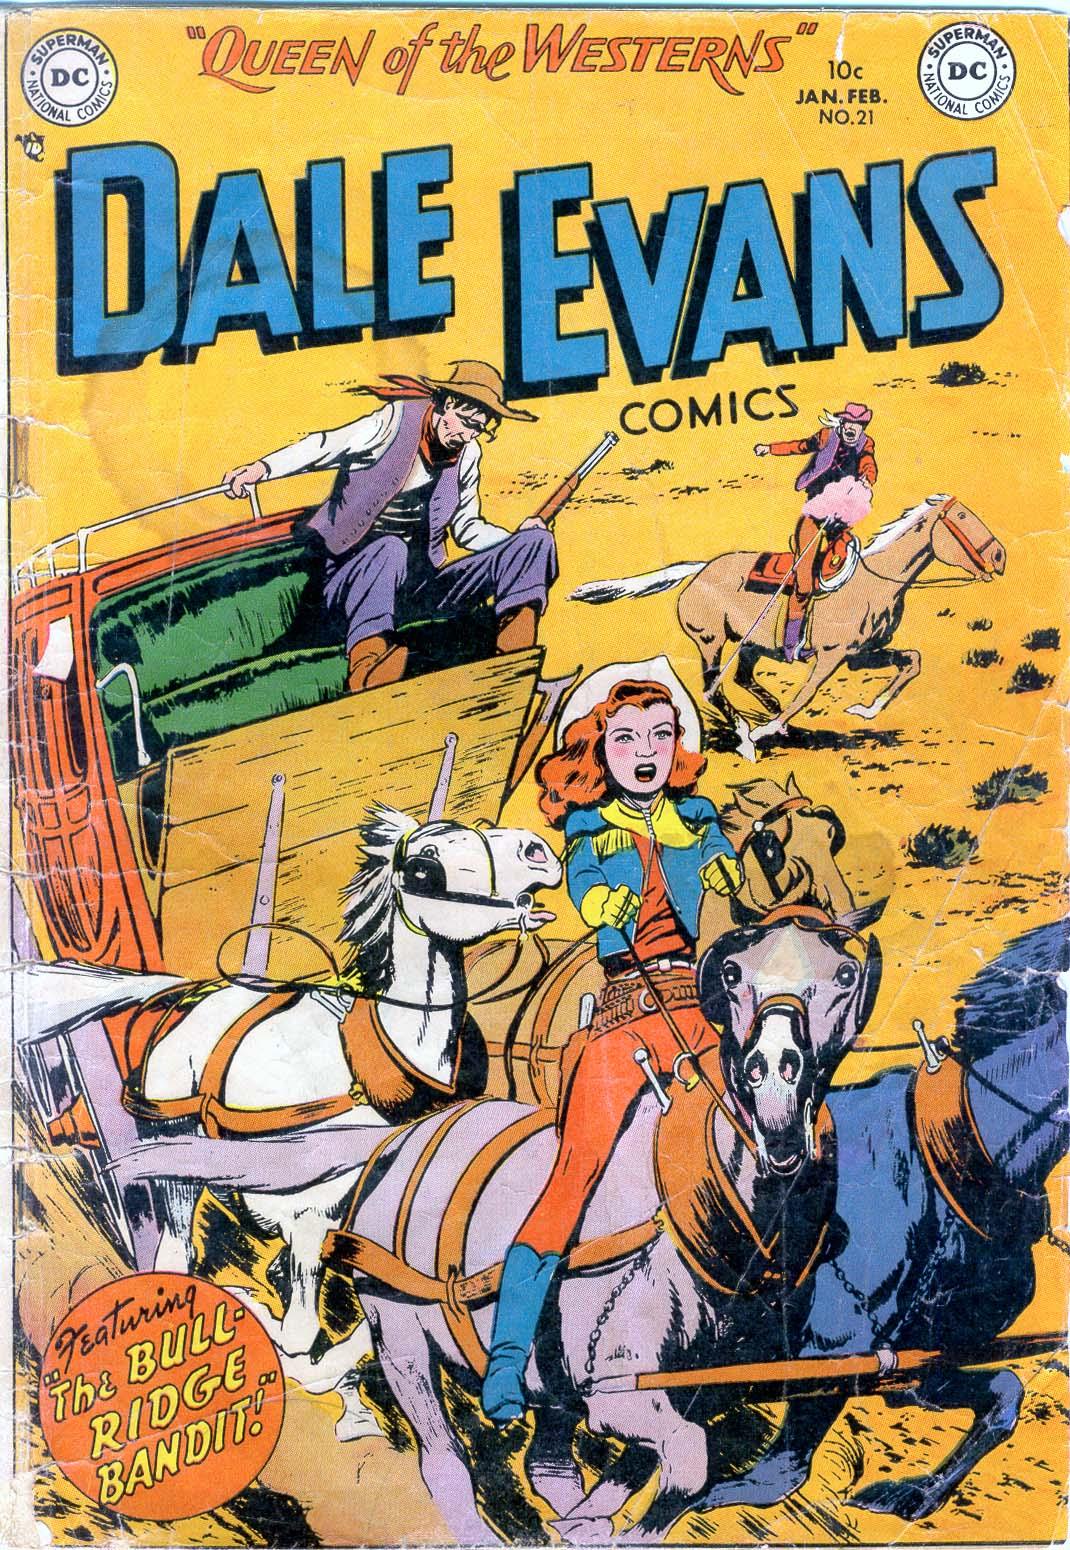 Dale Evans Comics Vol. 1 #21